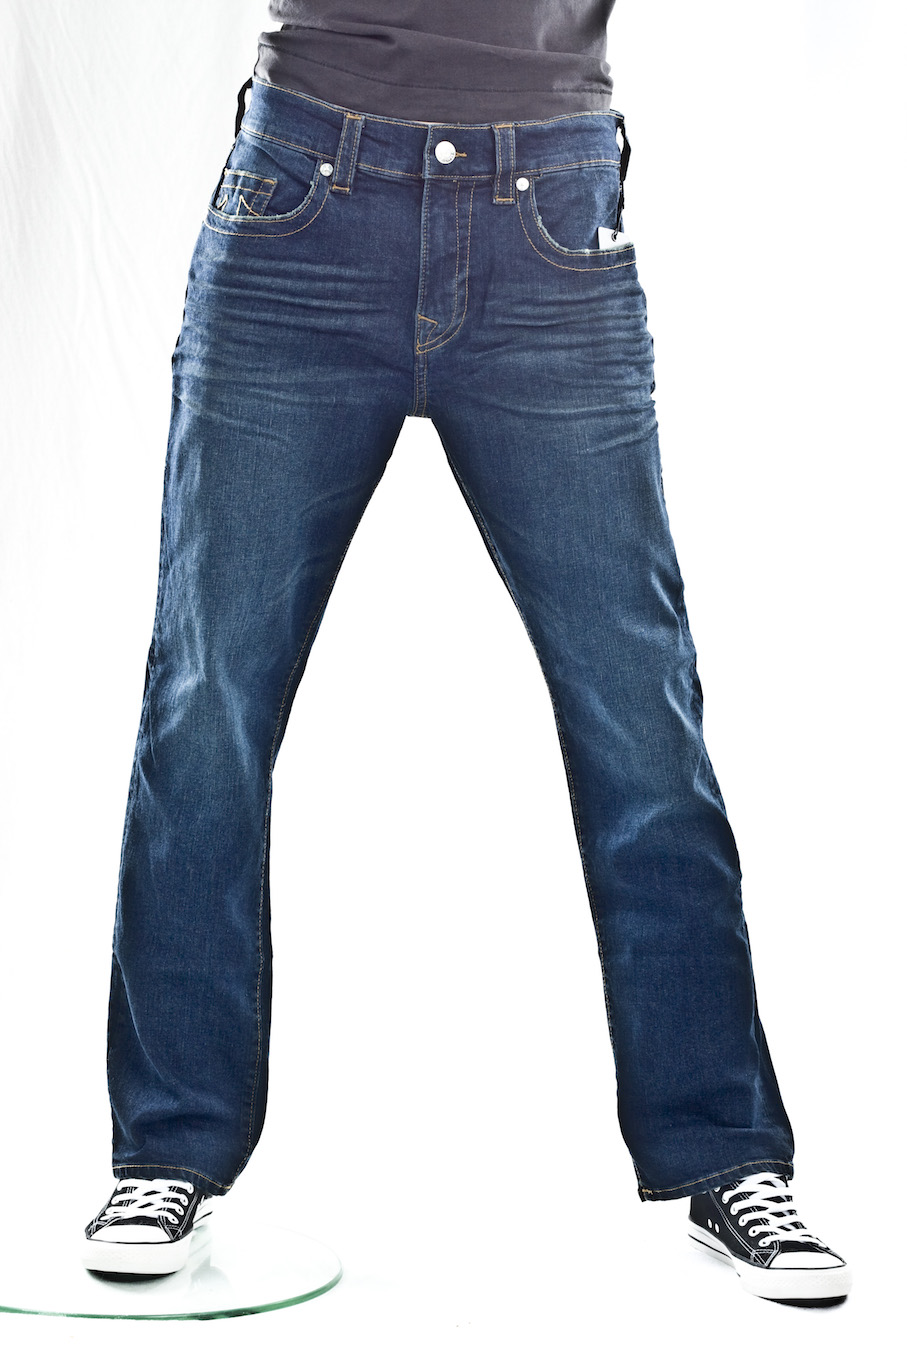 джинсы мужские True Religion Ricky sn nd flap прямые свободные